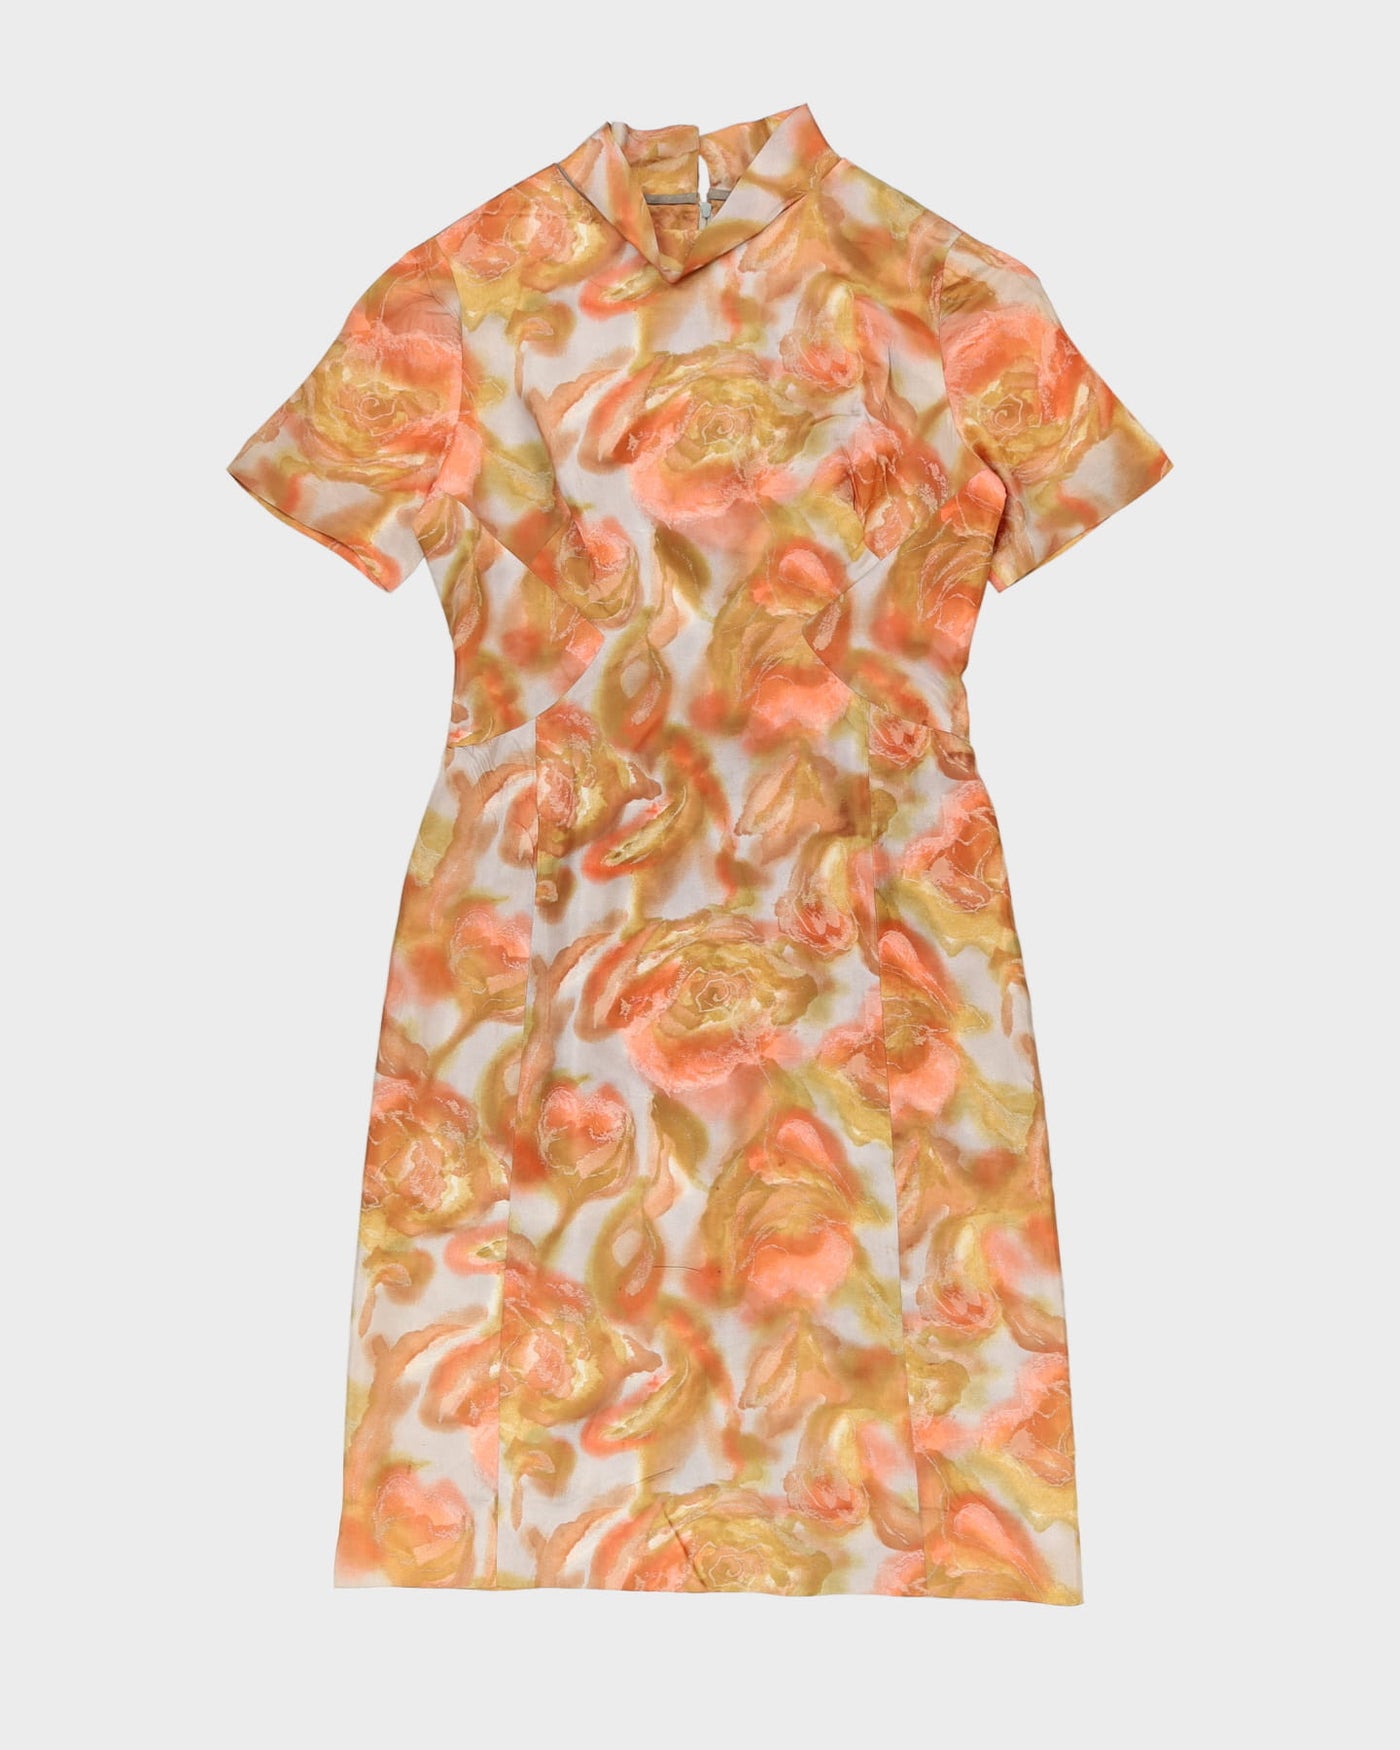 Vintage 1960s Orange Patterned Cocktail Dress - S